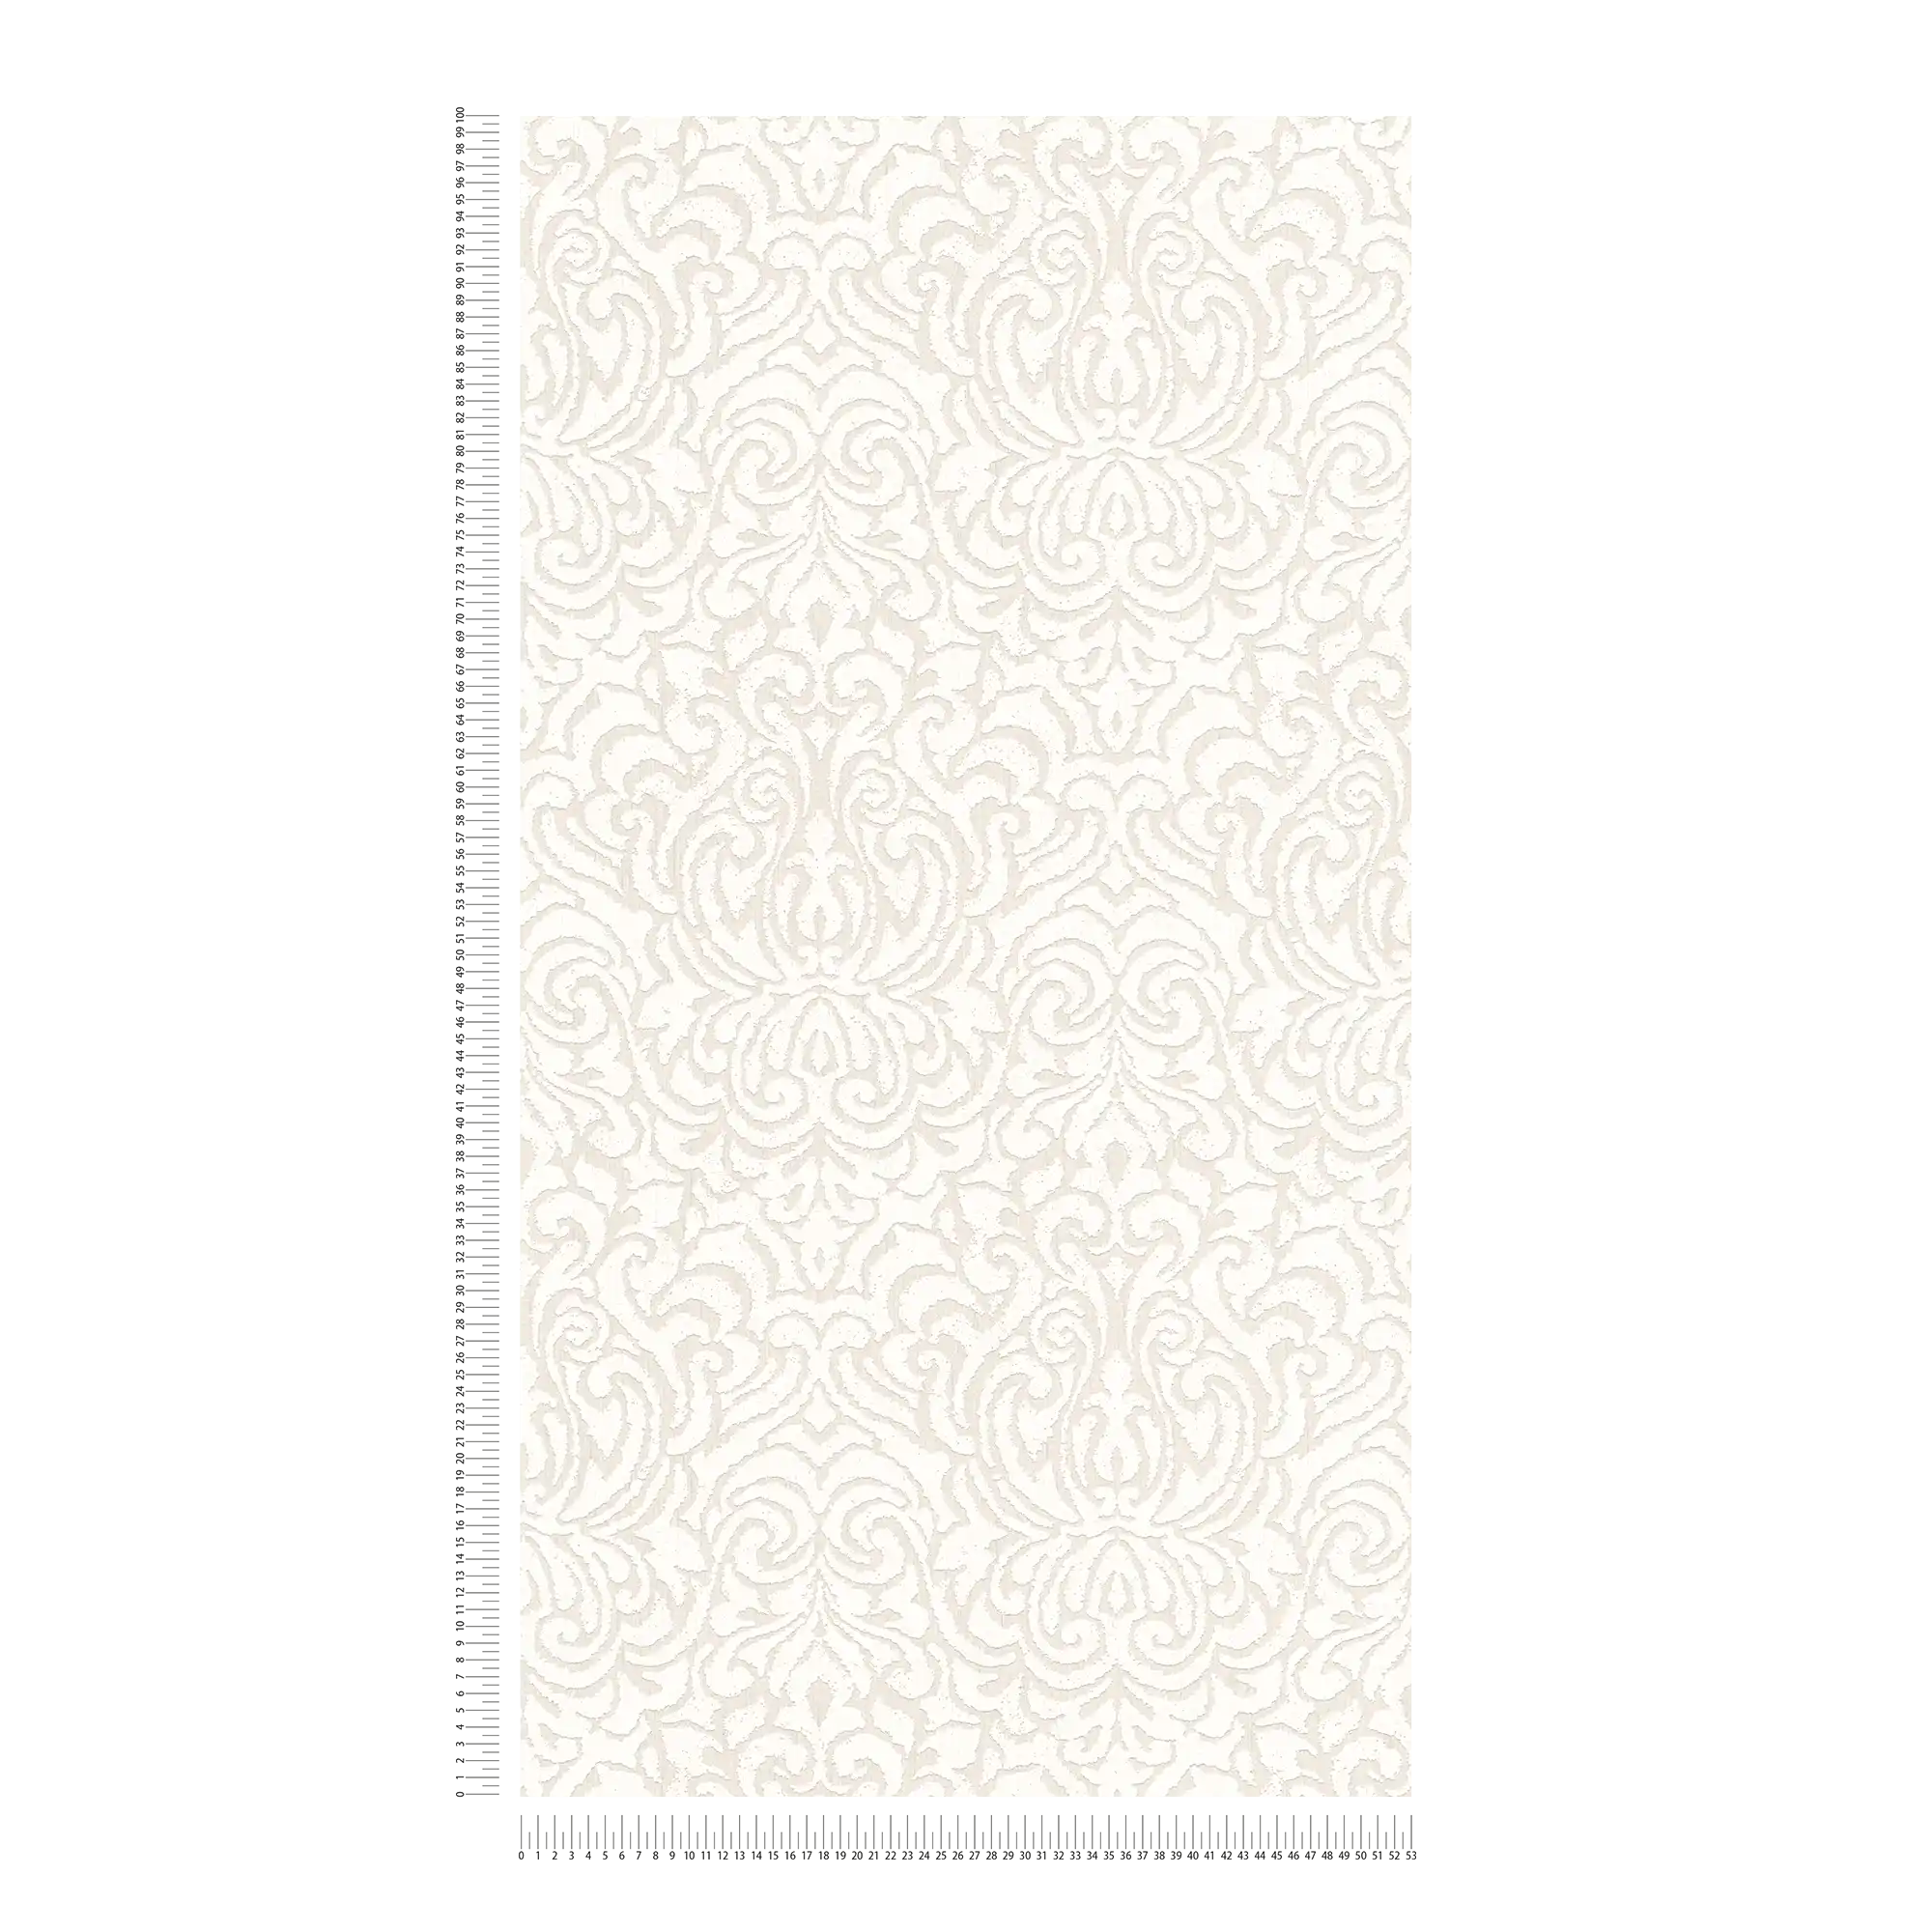             Papel pintado de textura ligera con adornos de estilo vintage - blanco
        